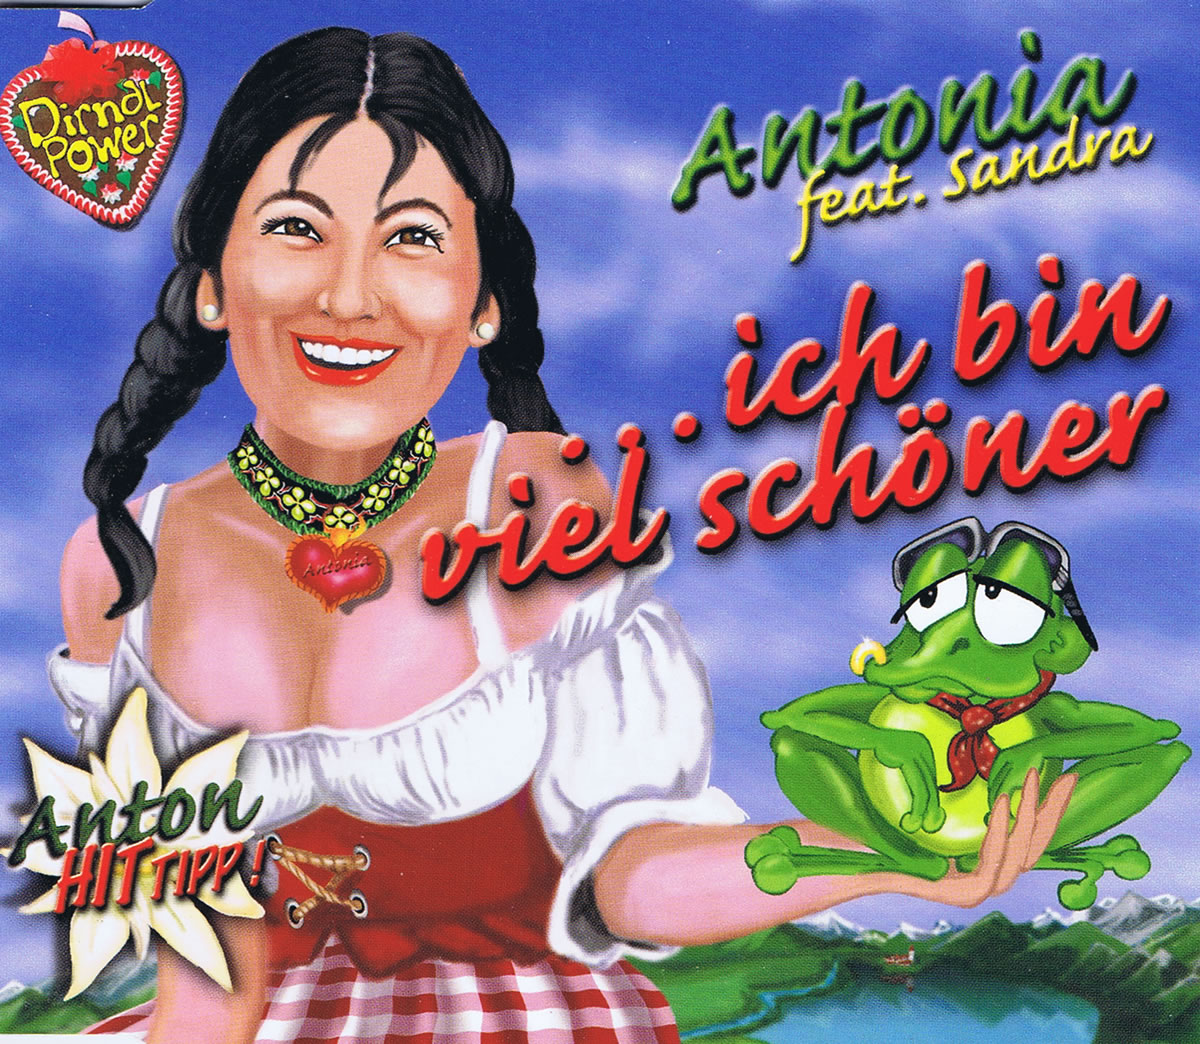 Antonia ft. featuring Sandra ...ich bin viel schöner cover artwork